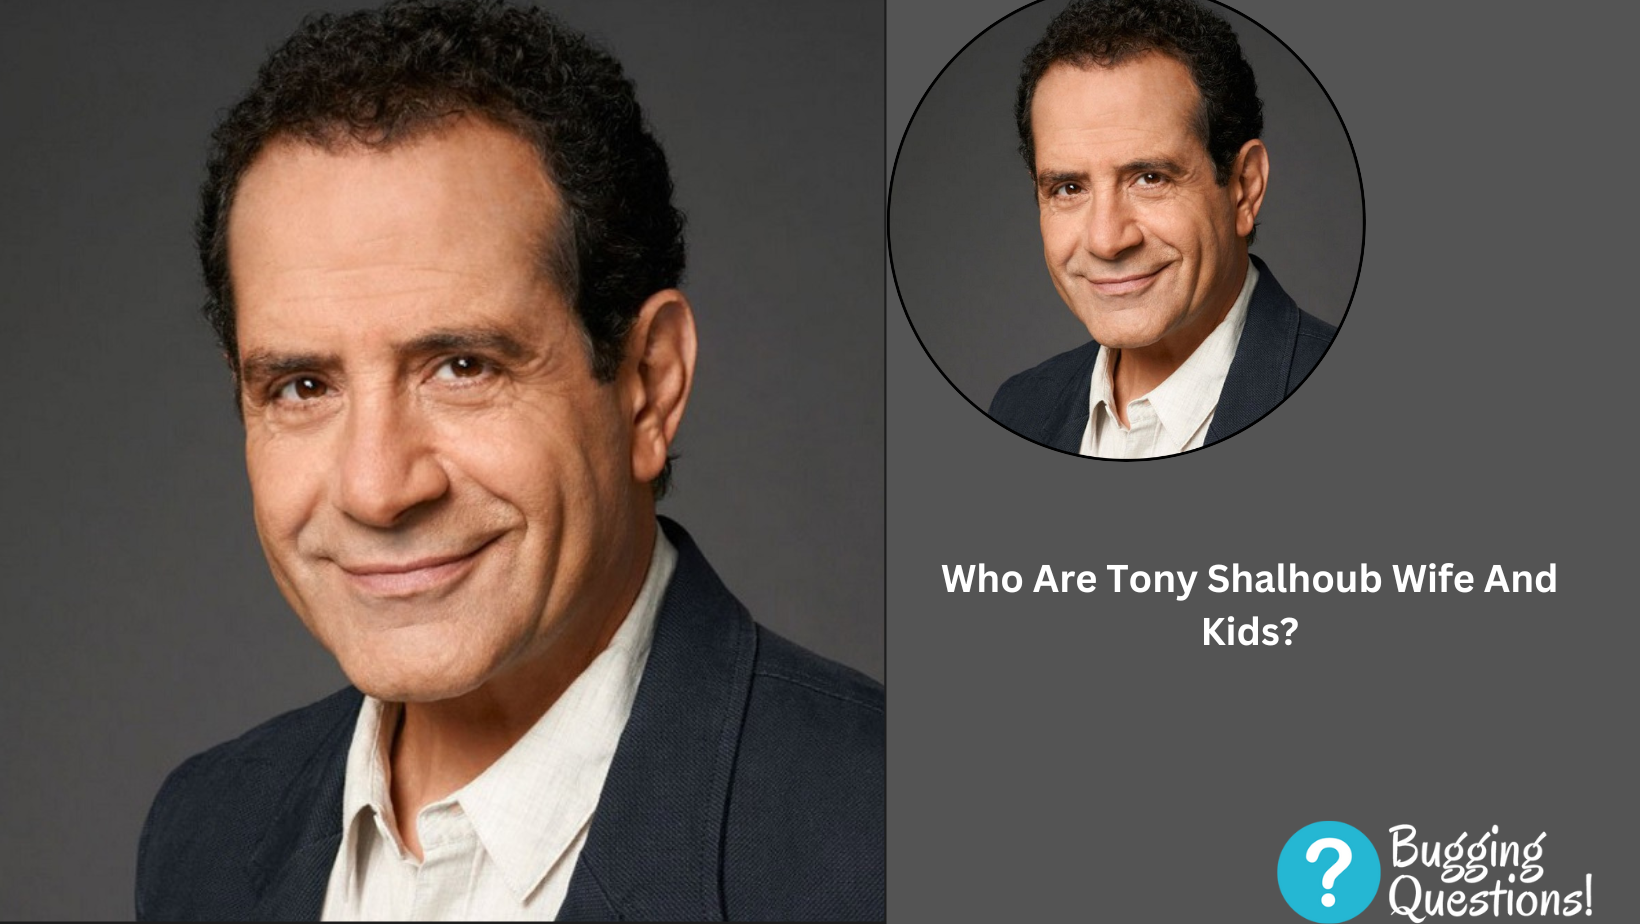 Who Are Tony Shalhoub Wife And Kids?